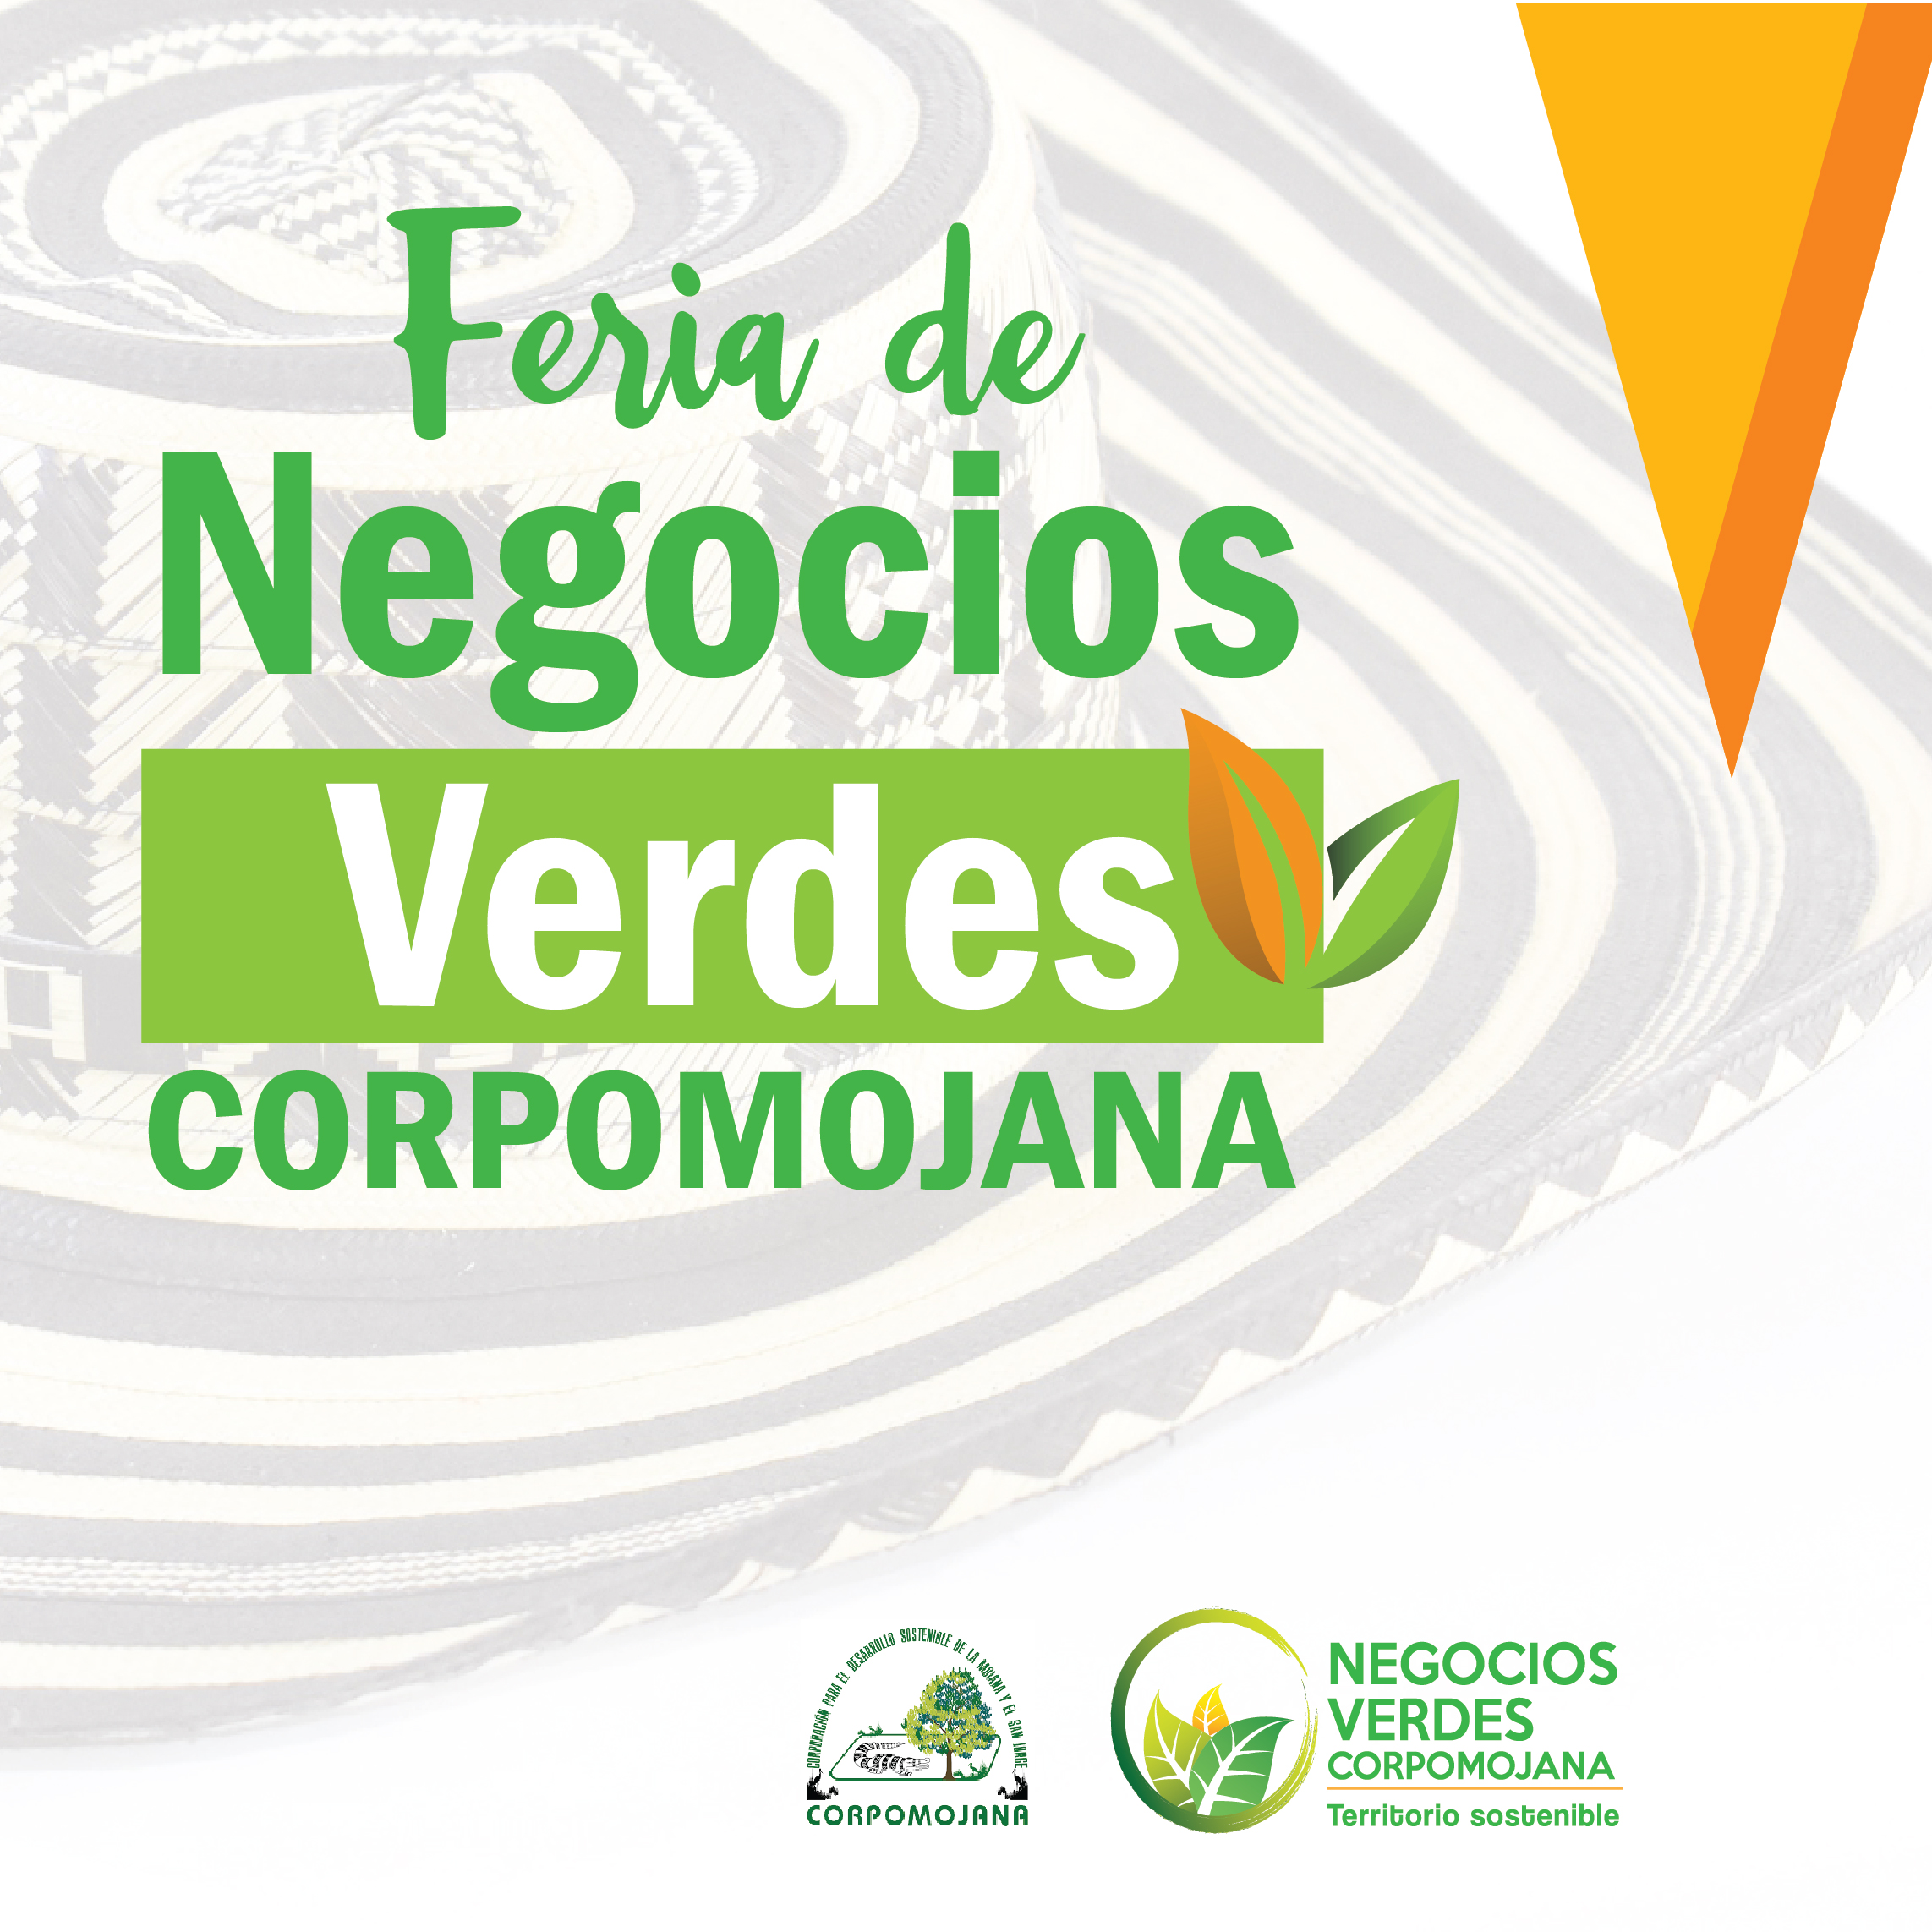 Boletín de Prensa - CORPOMOJANA le apuesta a la reactivación económica con la primera Feria de Negocios Verdes.